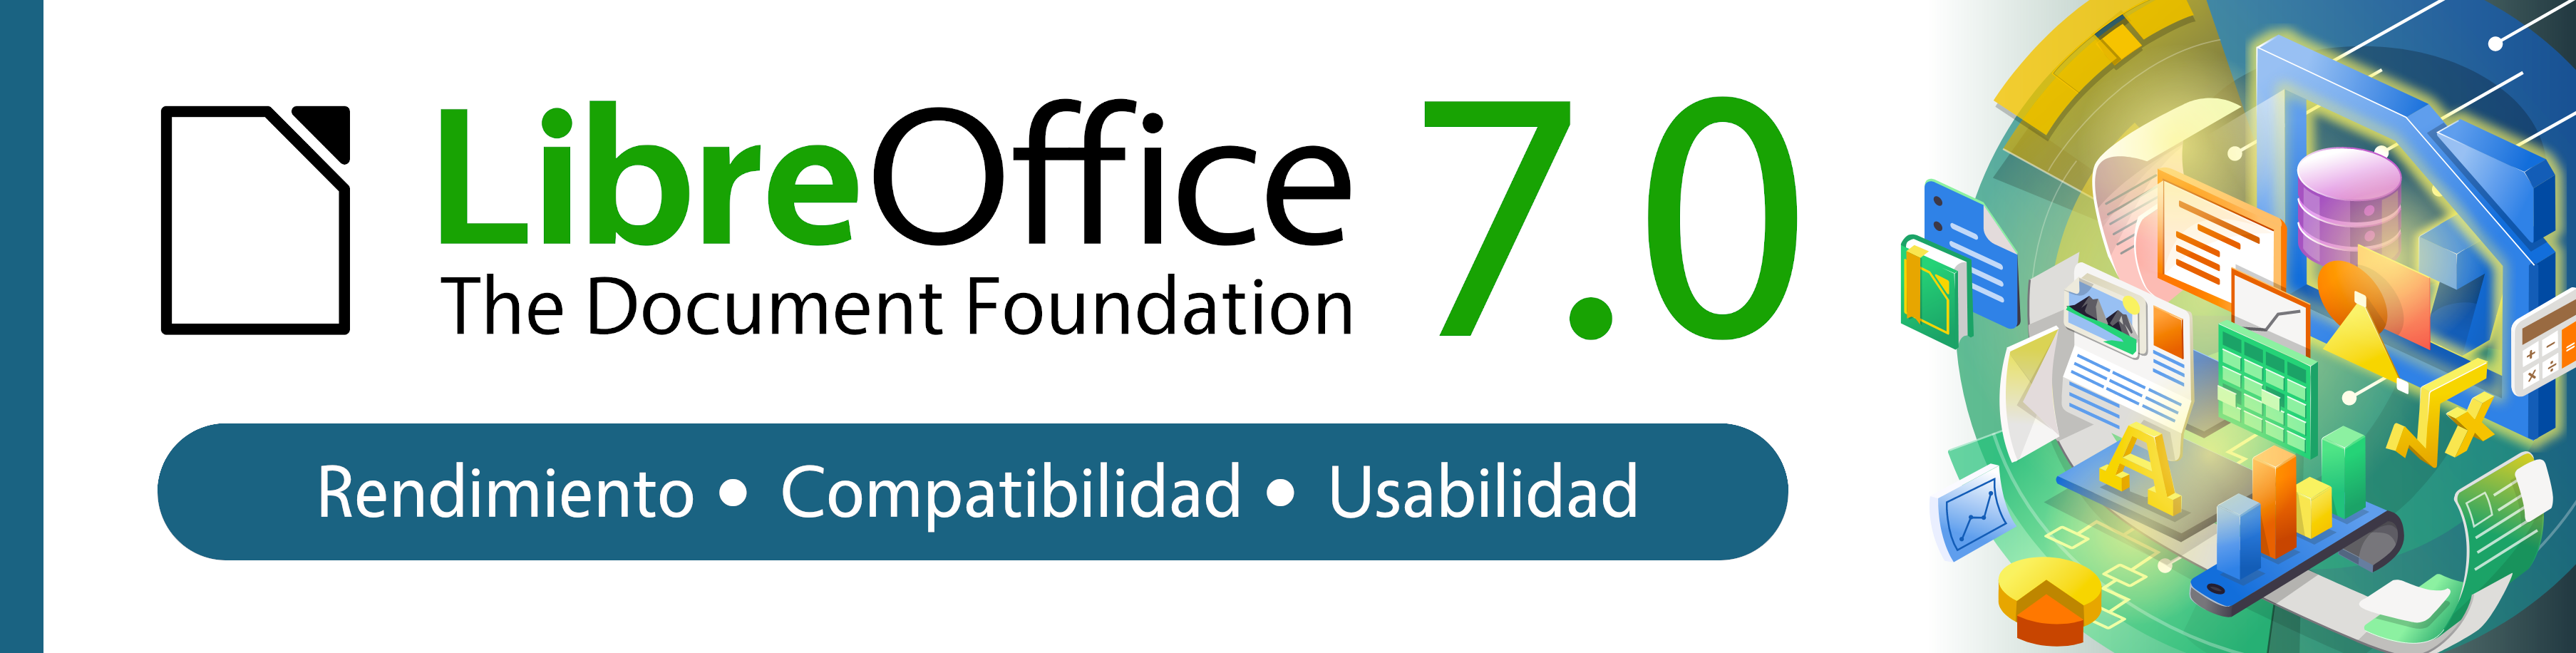 Anunciamos LibreOffice  - Blog de LibreOffice Hispano